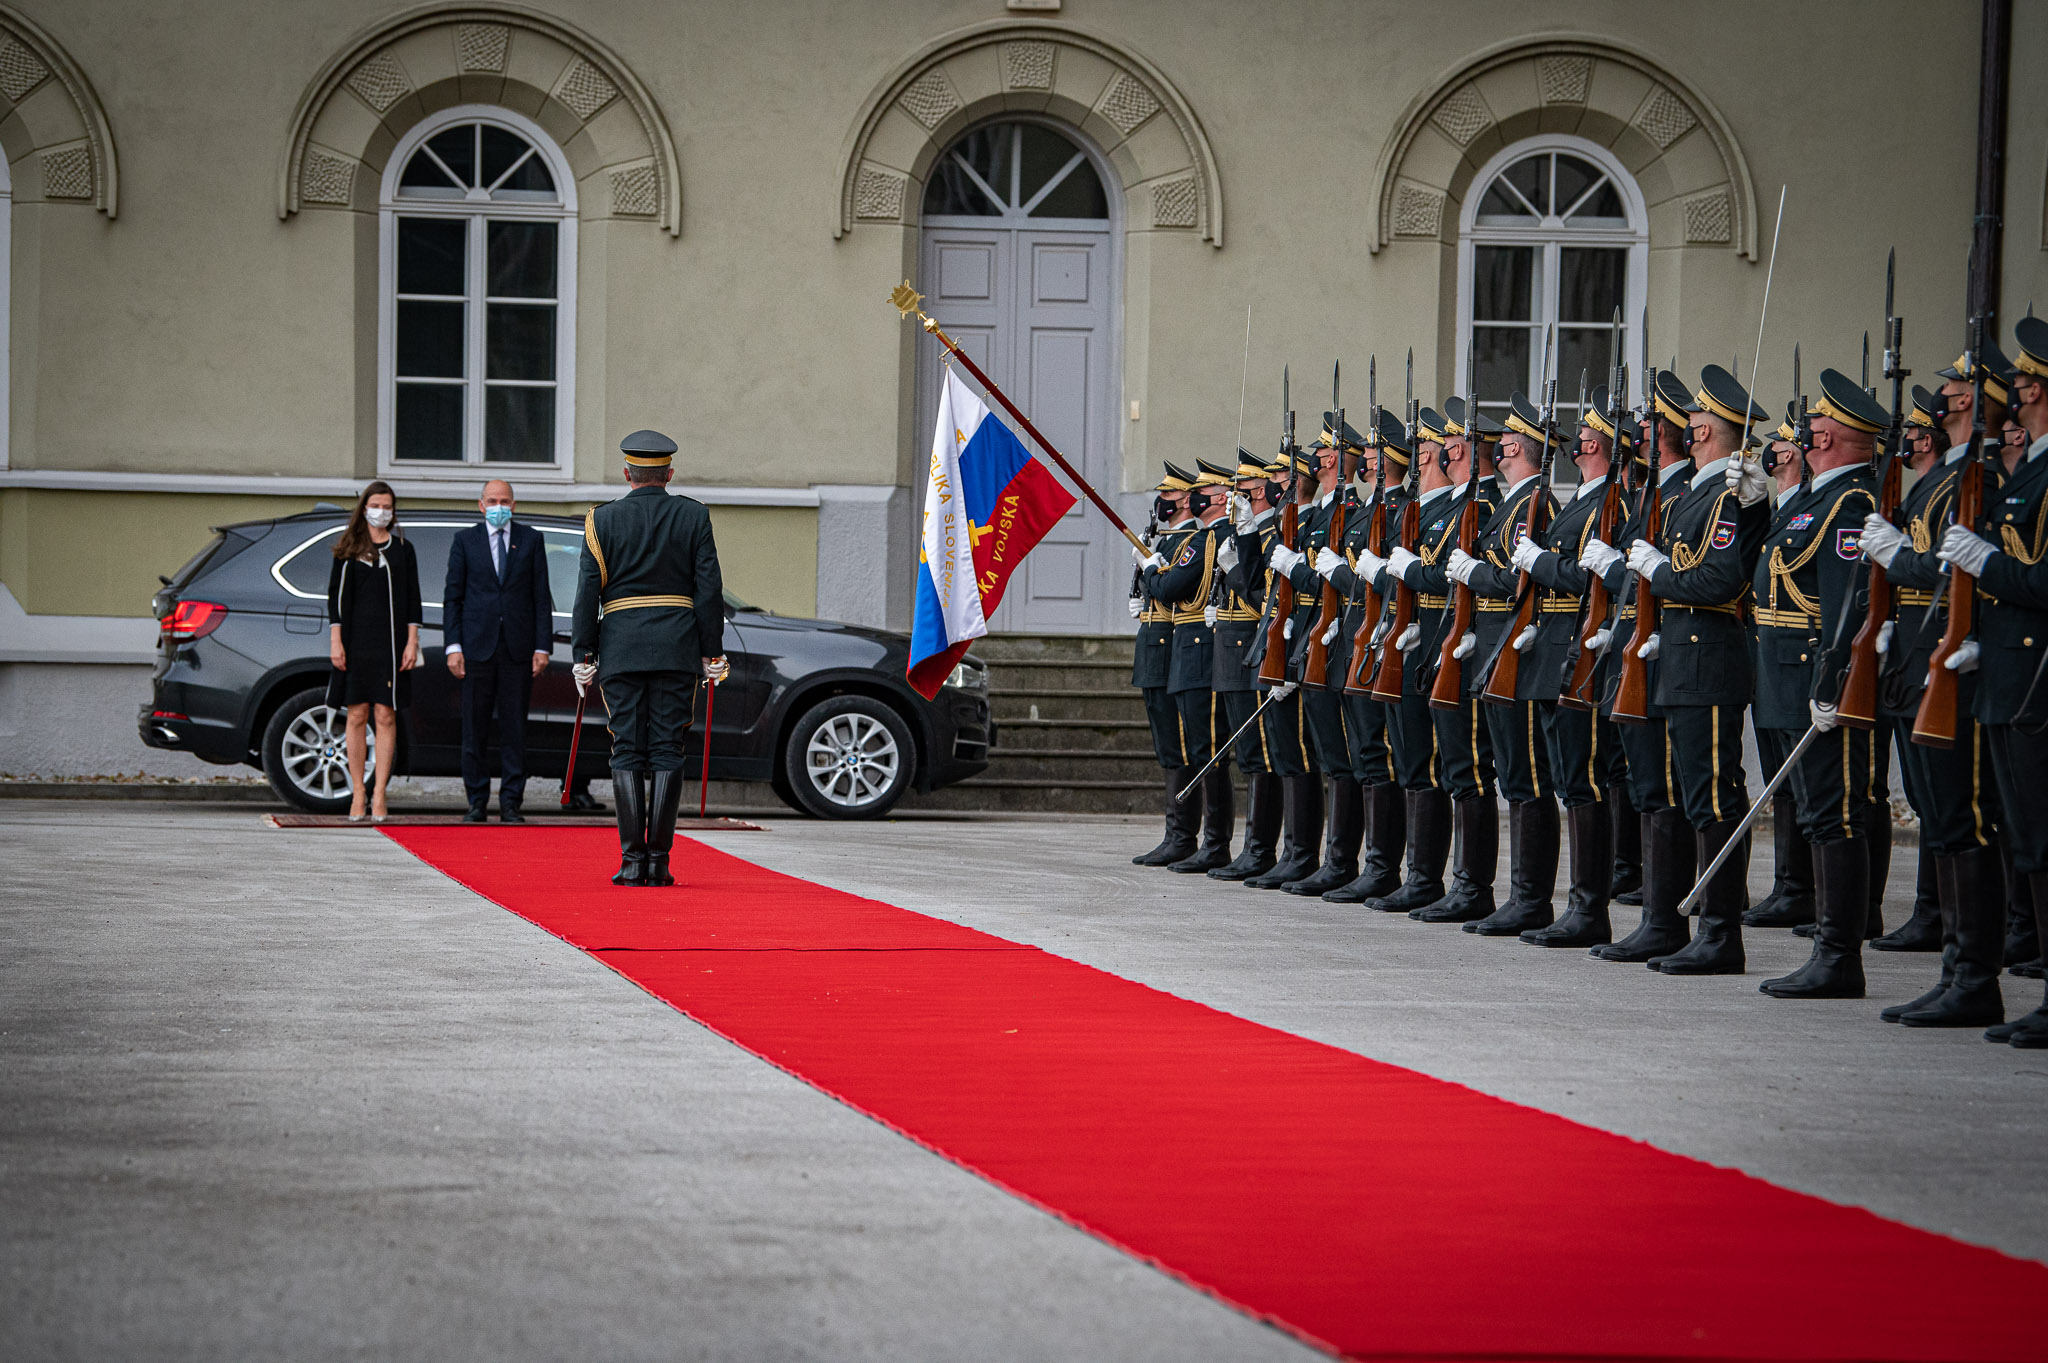 Prihod predsednika vlade s soprogo na koncert Big Band Orkestra Slovenske vojske ob 30. obletnici pekrskih dogodkov